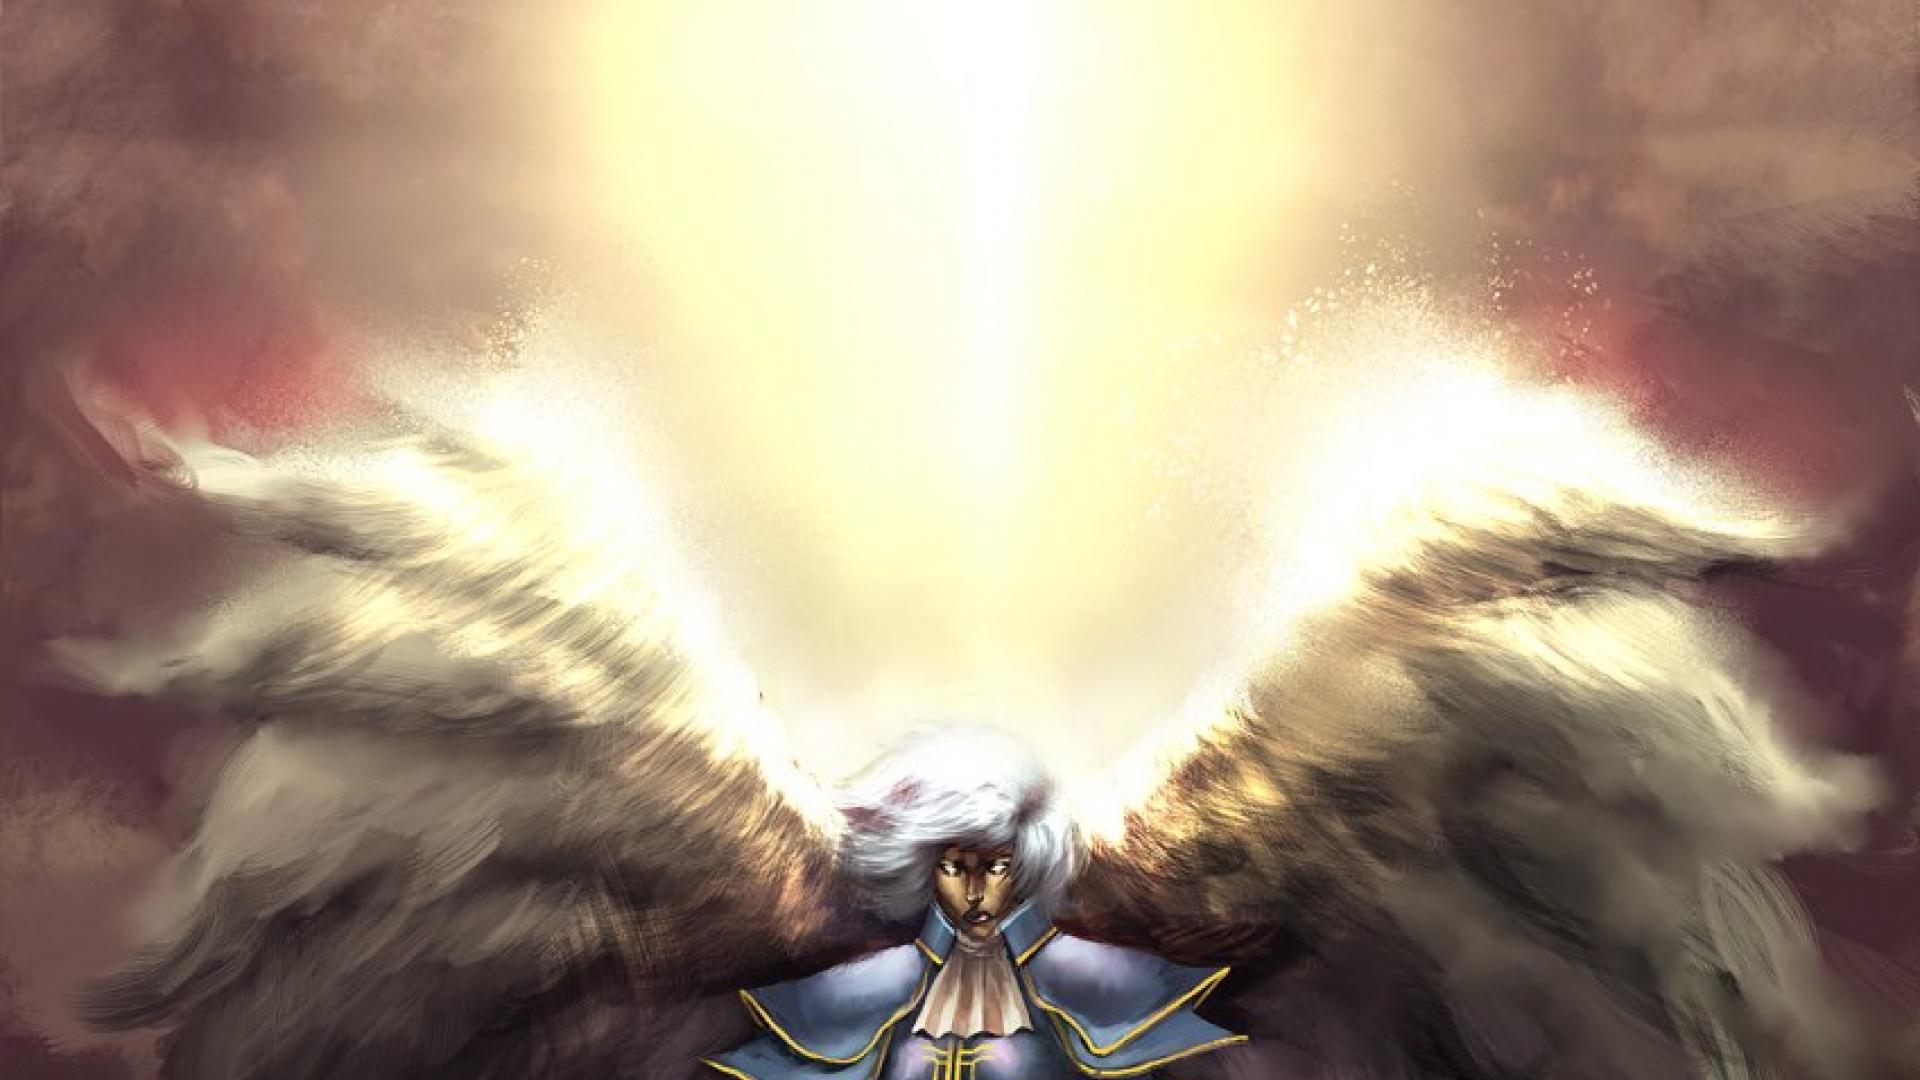 Archangel wings armor hd wallpaper - HQ Desktop